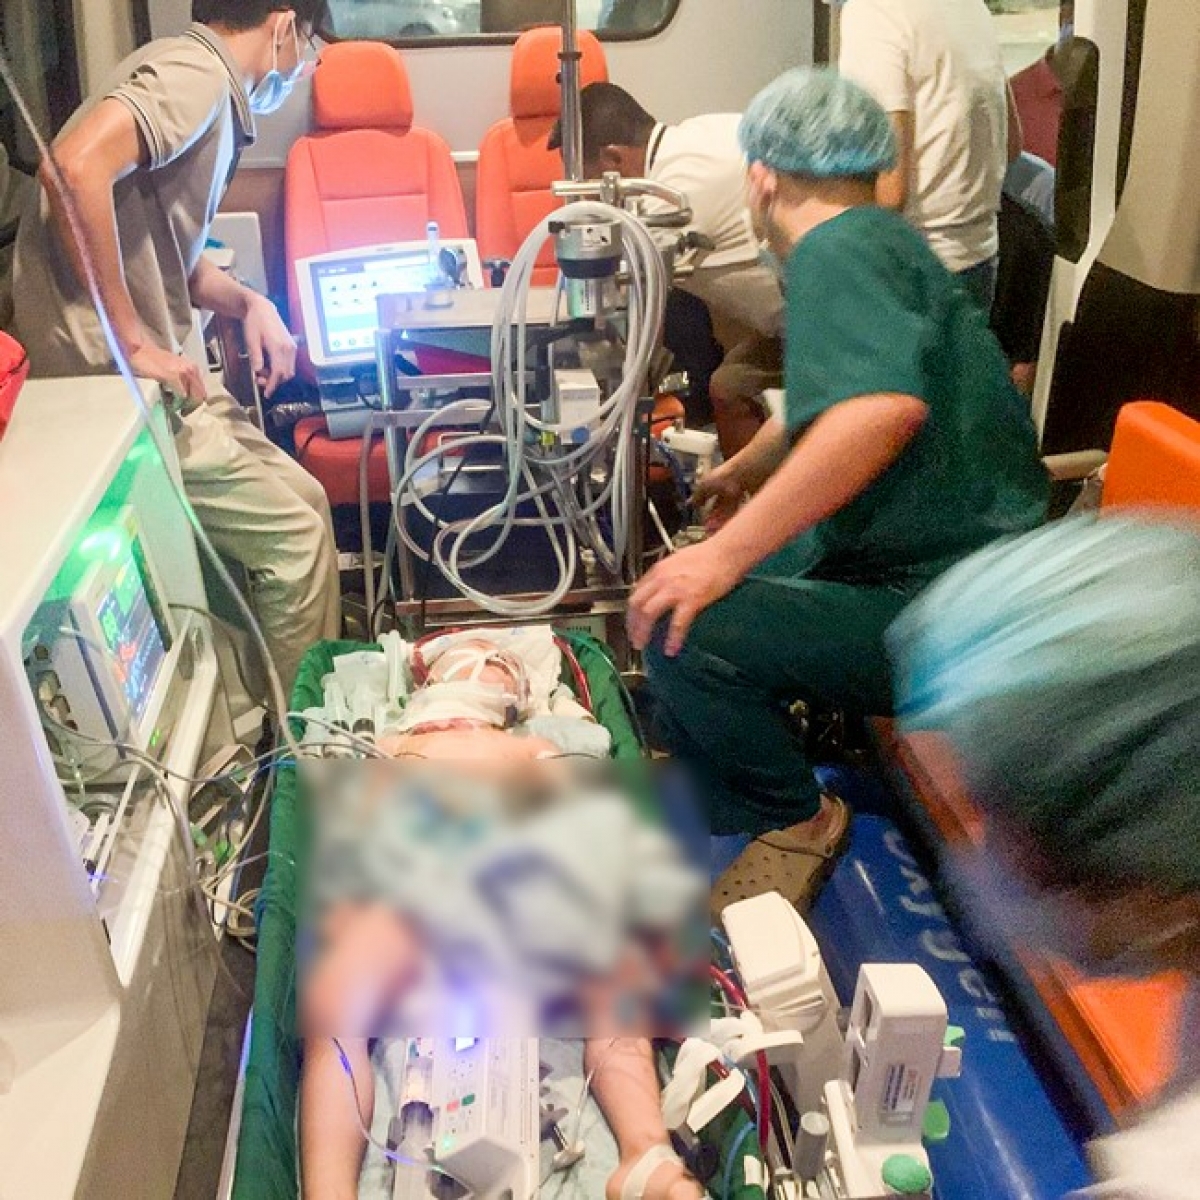 Trong gần 6 tiếng di chuyển từ Sơn La về Hà Nội, các bác sĩ luôn phải đảm bảo hệ thống máy móc đi cùng bệnh nhi hoạt động ổn định liên tục, không để 1 sai sót dù nhỏ nhất có thể xảy ra (Ảnh: Bác sĩ cung cấp)